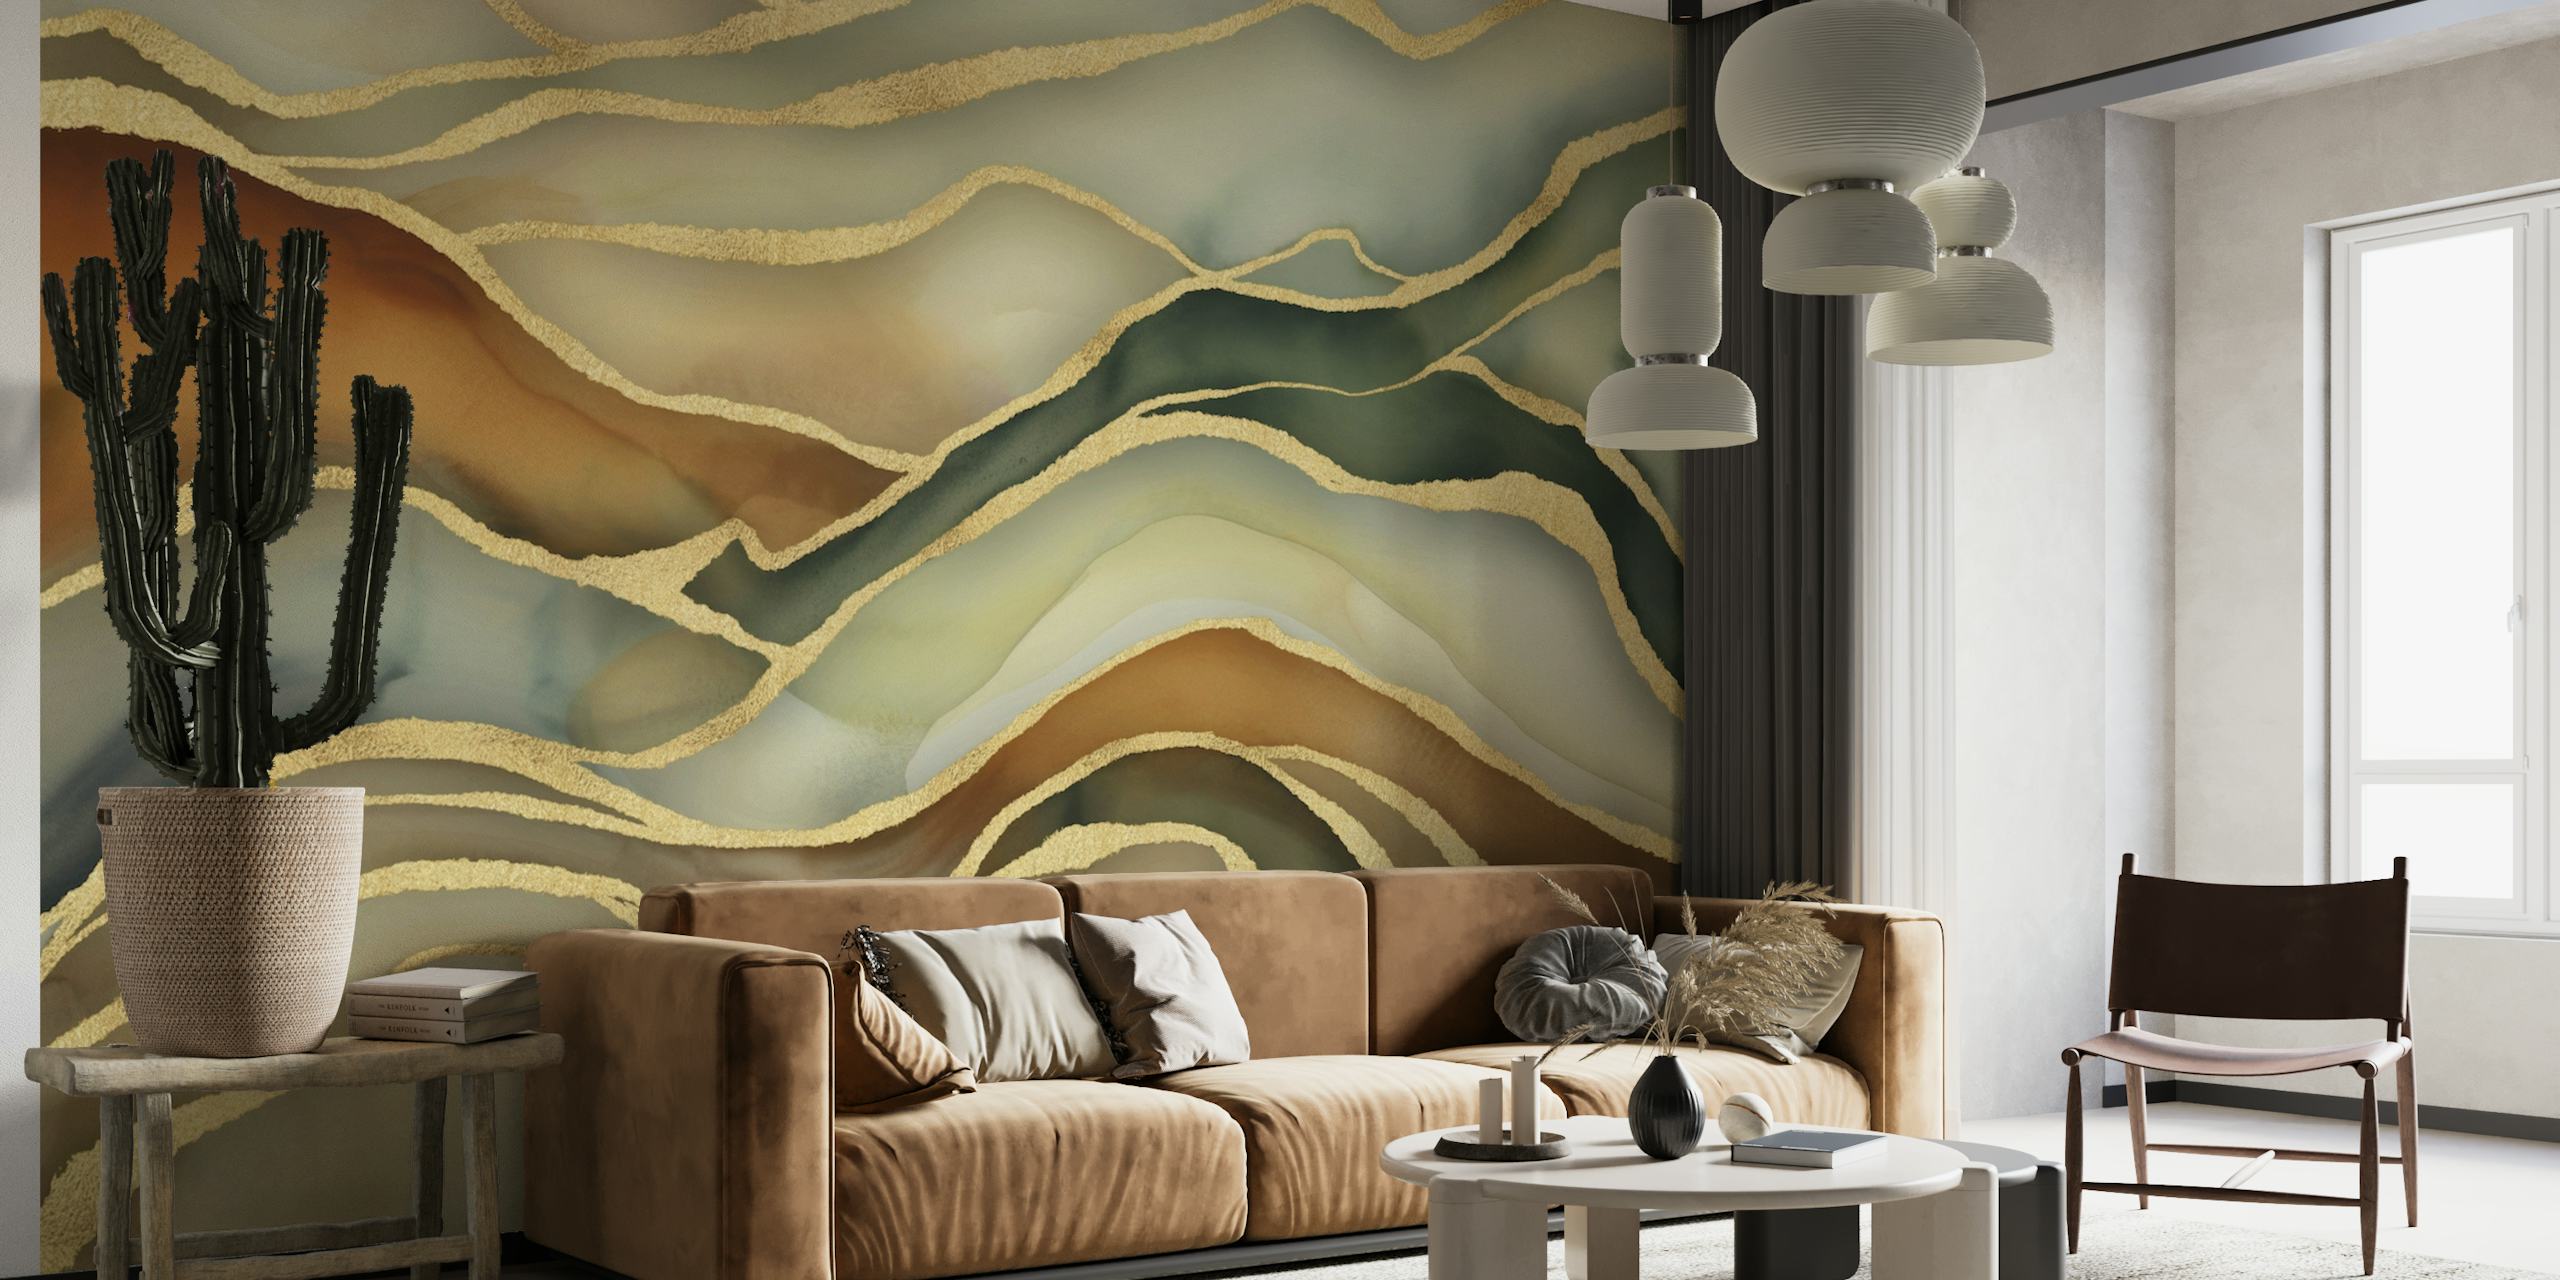 Abstrakt marmorlandskabsvægmaleri i brune, grønne og guldfarver